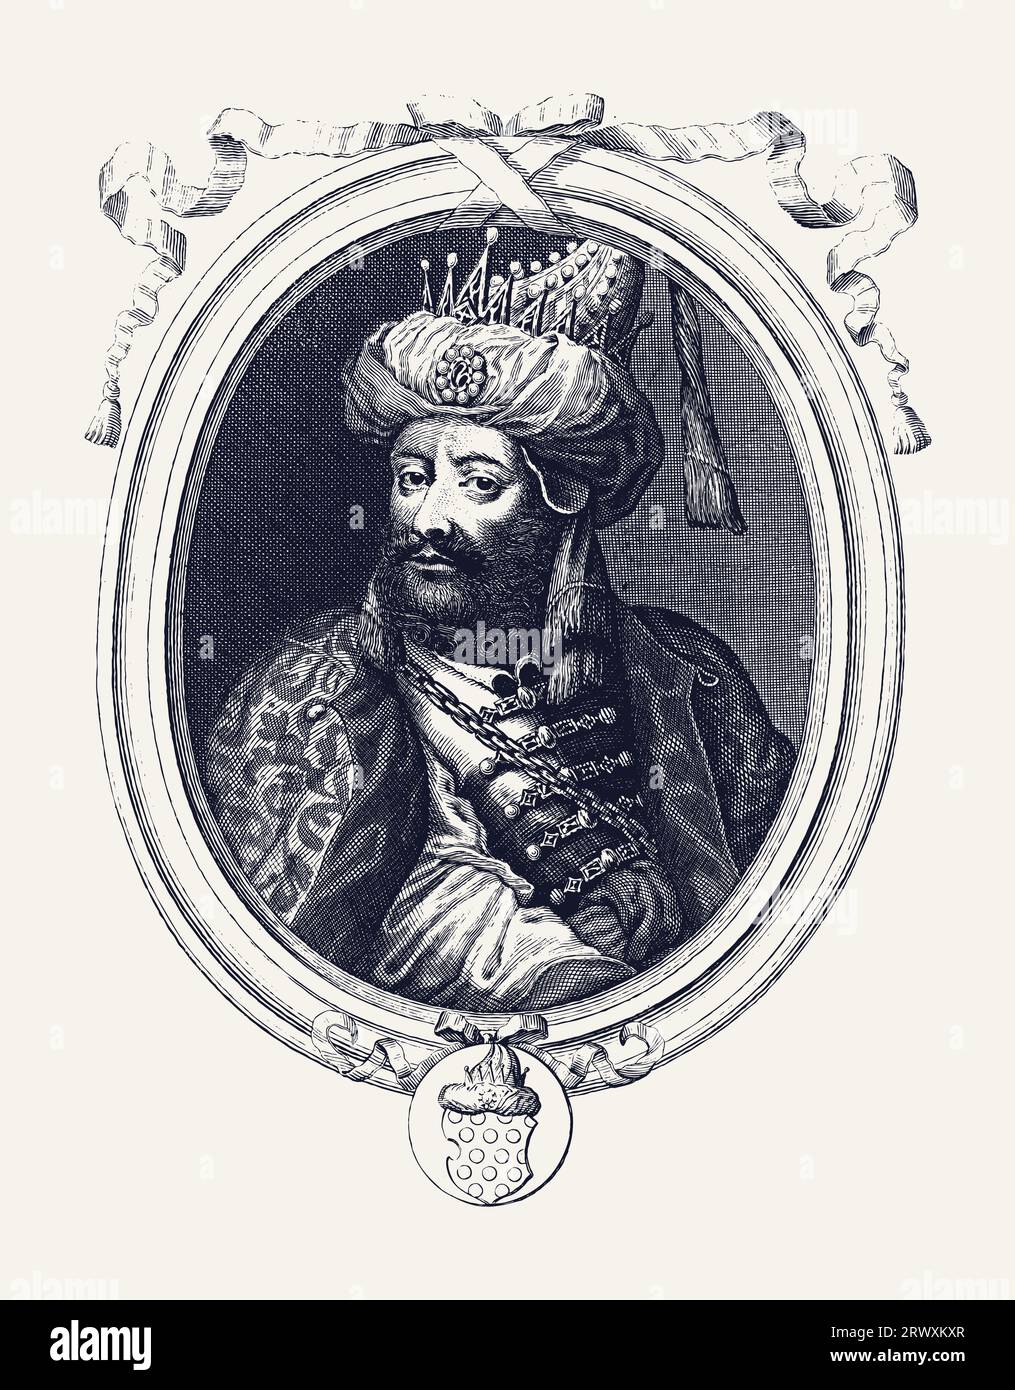 Illustration vectorielle de style gravure vintage d'Aurangzeb Alamgir, le sultan de l'Empire moghol. Banque D'Images